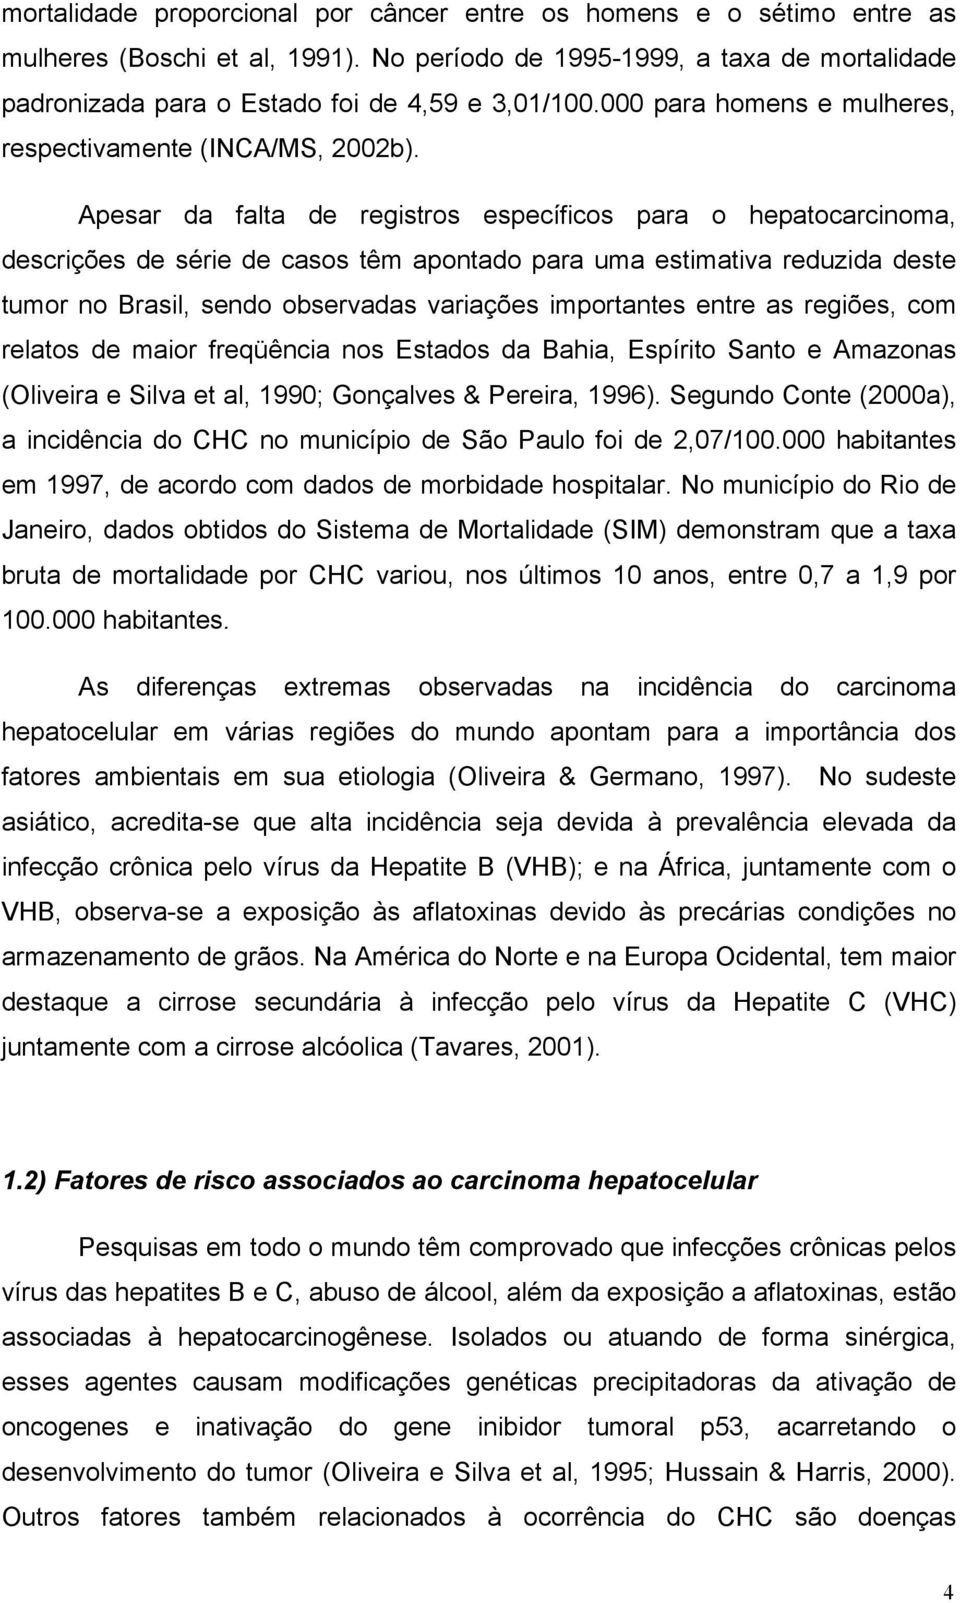 Apesar da falta de registros específicos para o hepatocarcinoma, descrições de série de casos têm apontado para uma estimativa reduzida deste tumor no Brasil, sendo observadas variações importantes